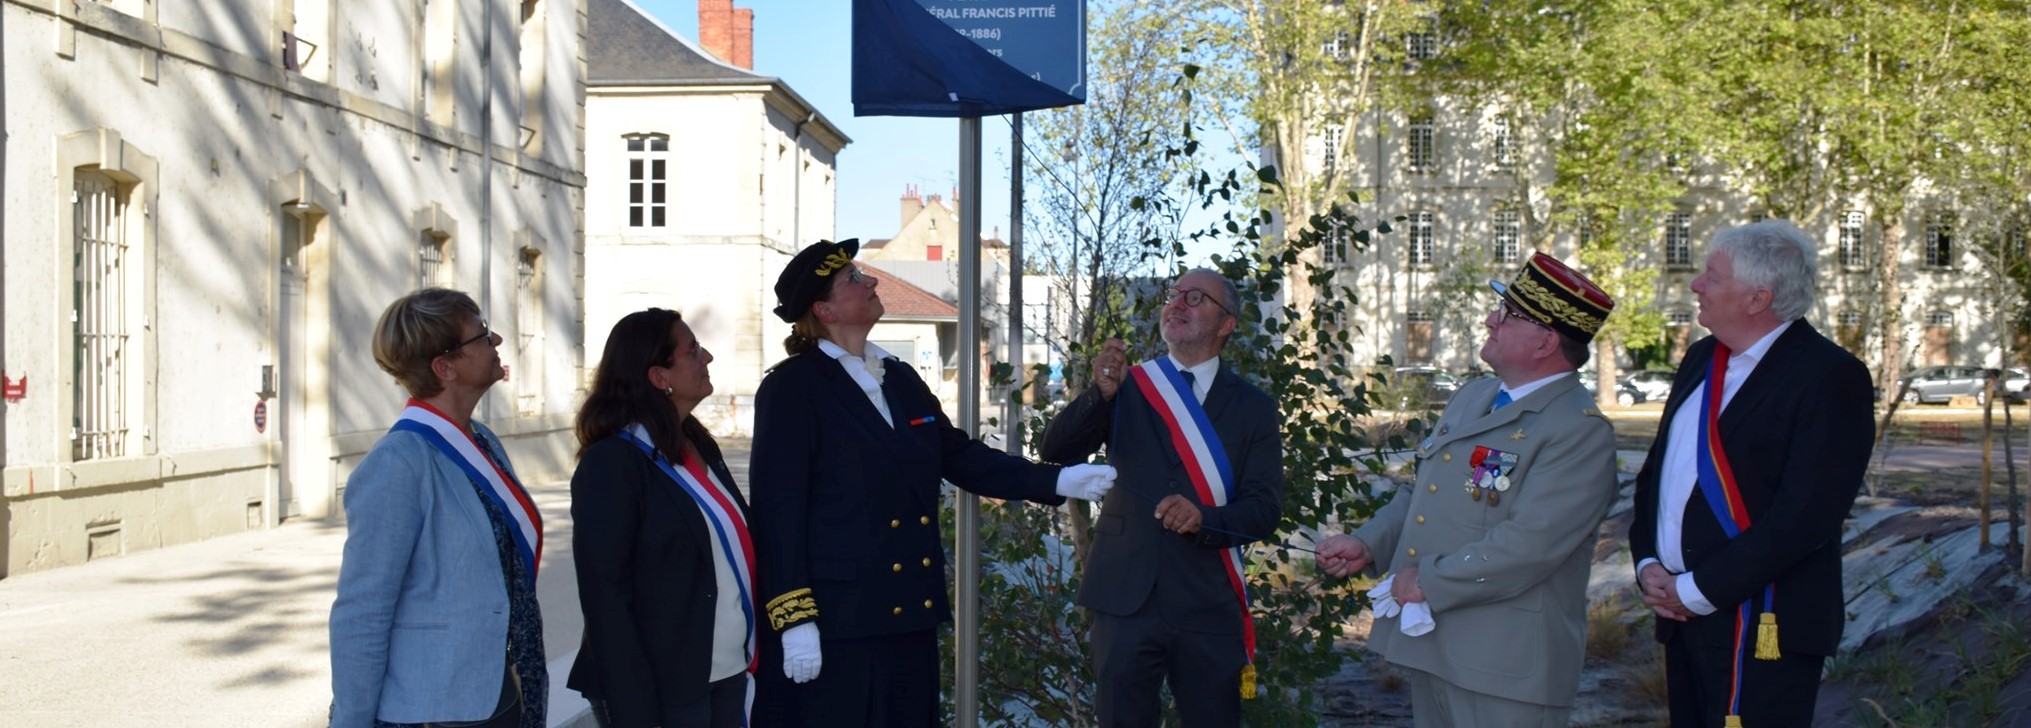 Inauguration de la place Pittié à Nevers le 13 septembre 2019 en présence de Nadia SOLLOGOUB